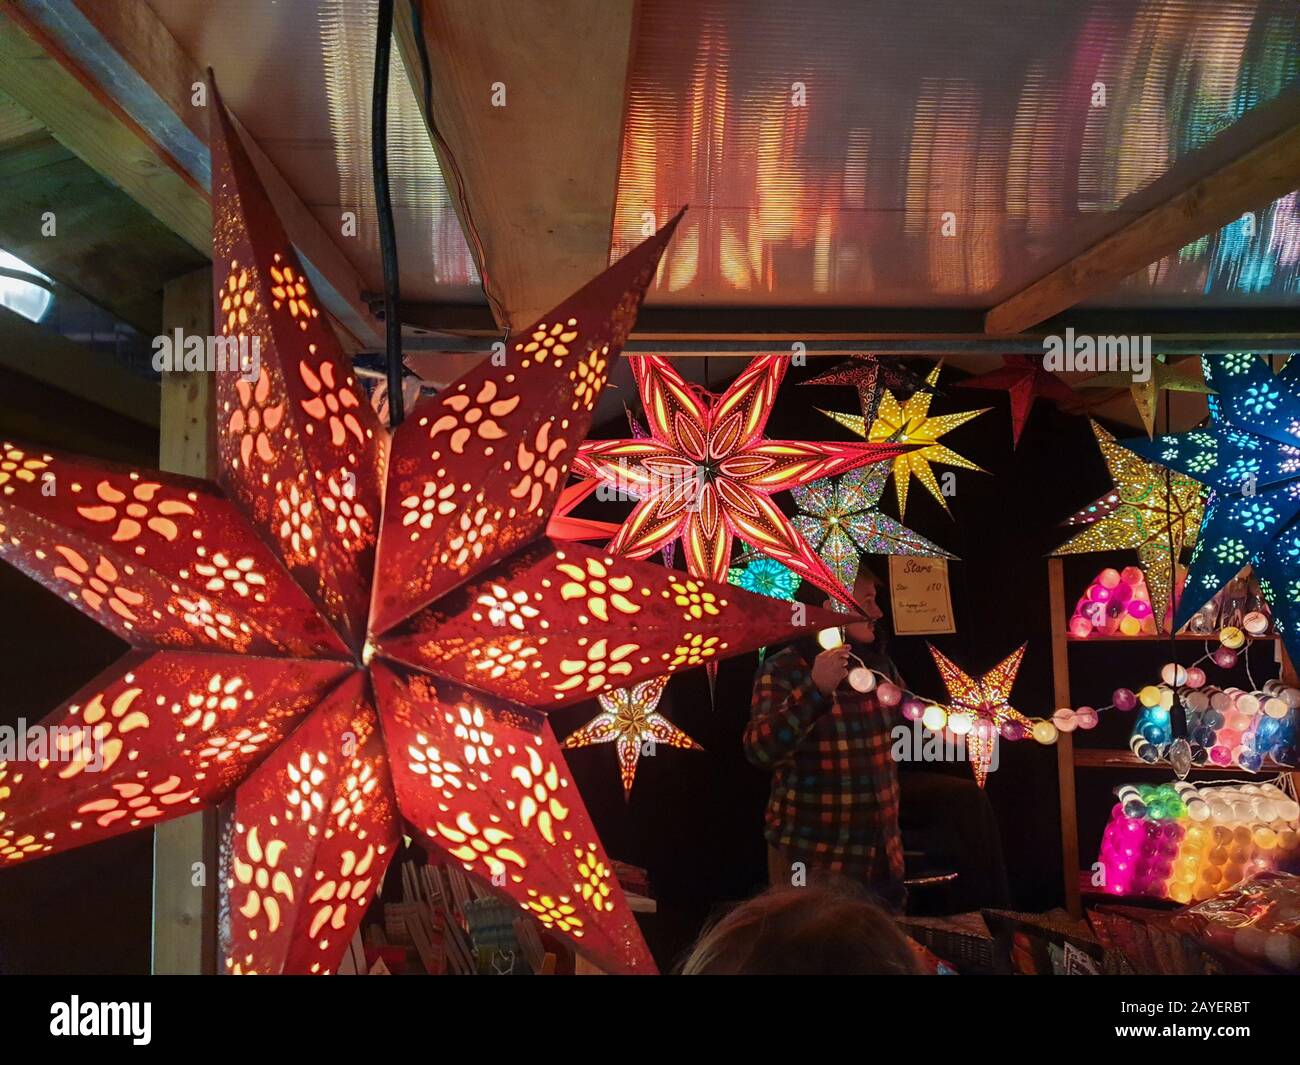 Die sternförmige Papierlampe leuchtet in einem Festplatz auf einem Weihnachtsmarkt in der Nähe des Bahnhofs Liverpool Lime Street Stockfoto